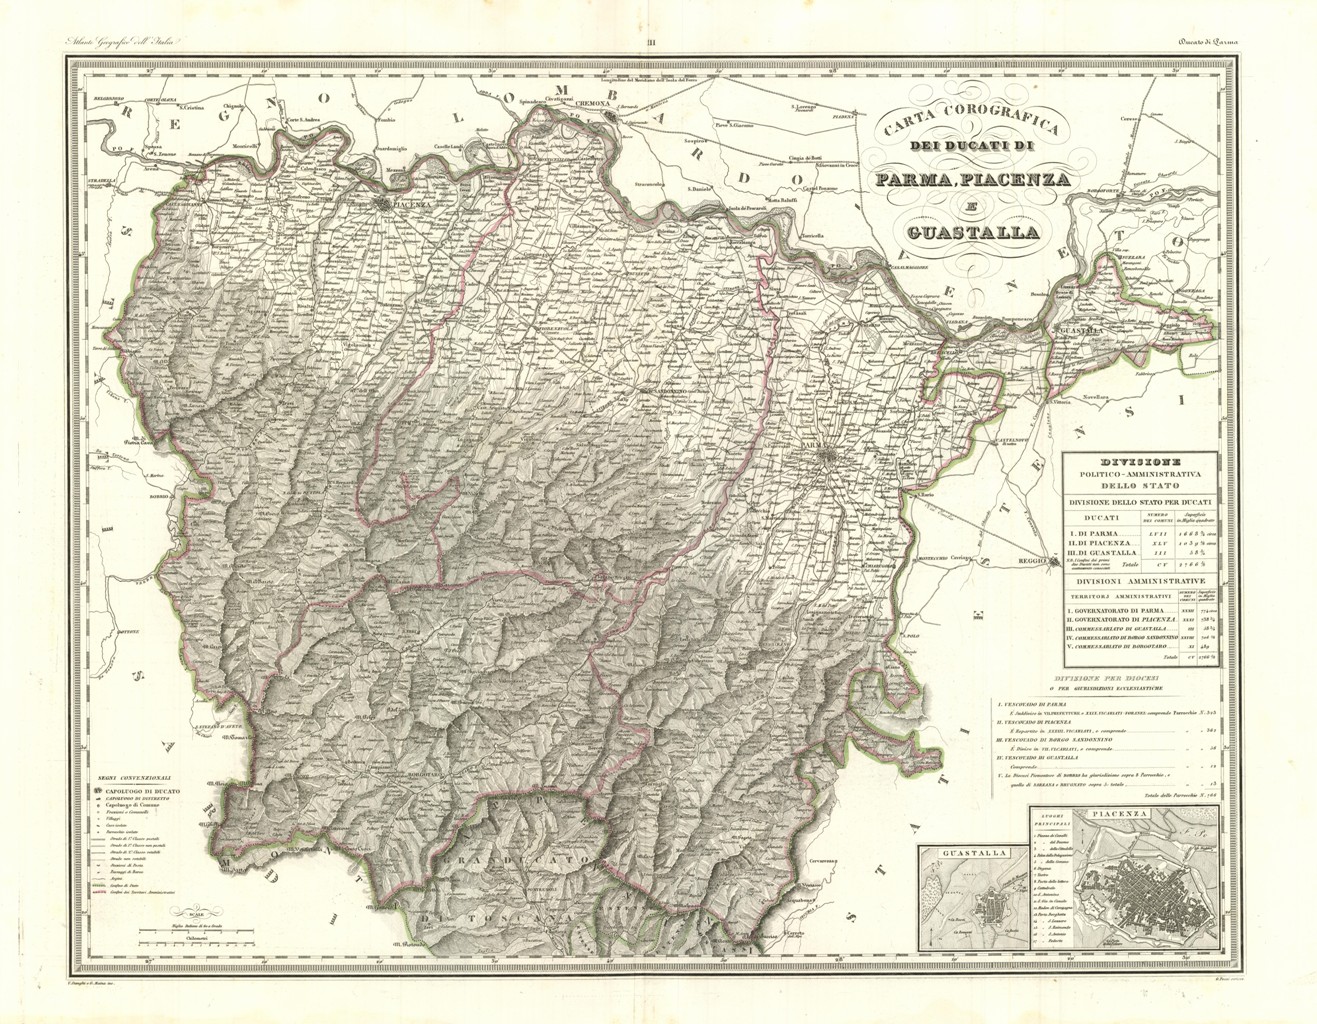 Carta Orografica e Idrografica dei Ducati di Parma ...